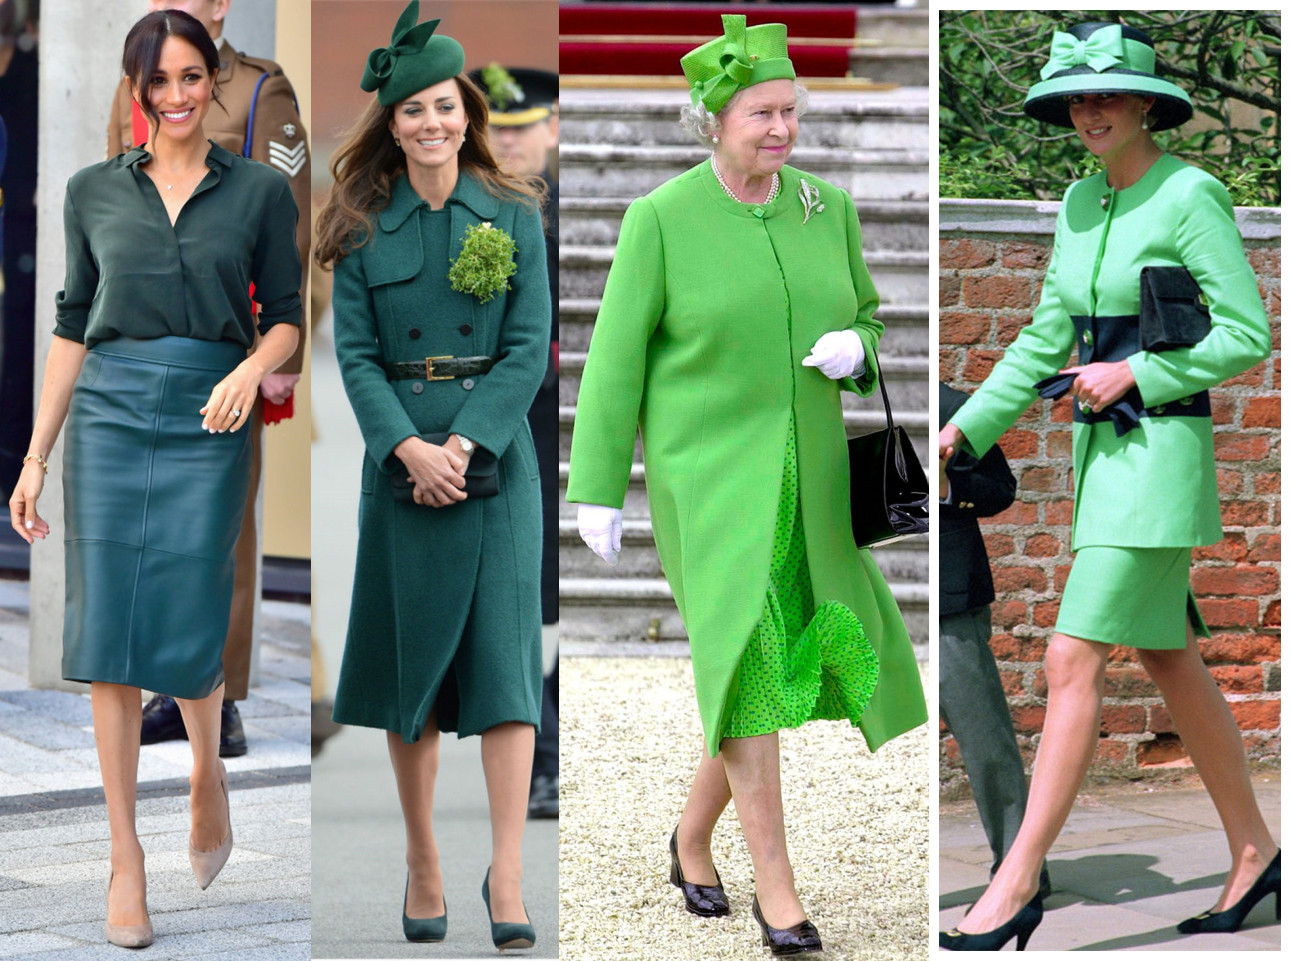 英国王室女性绿色服装造型大pk:伊丽莎白女王赢了